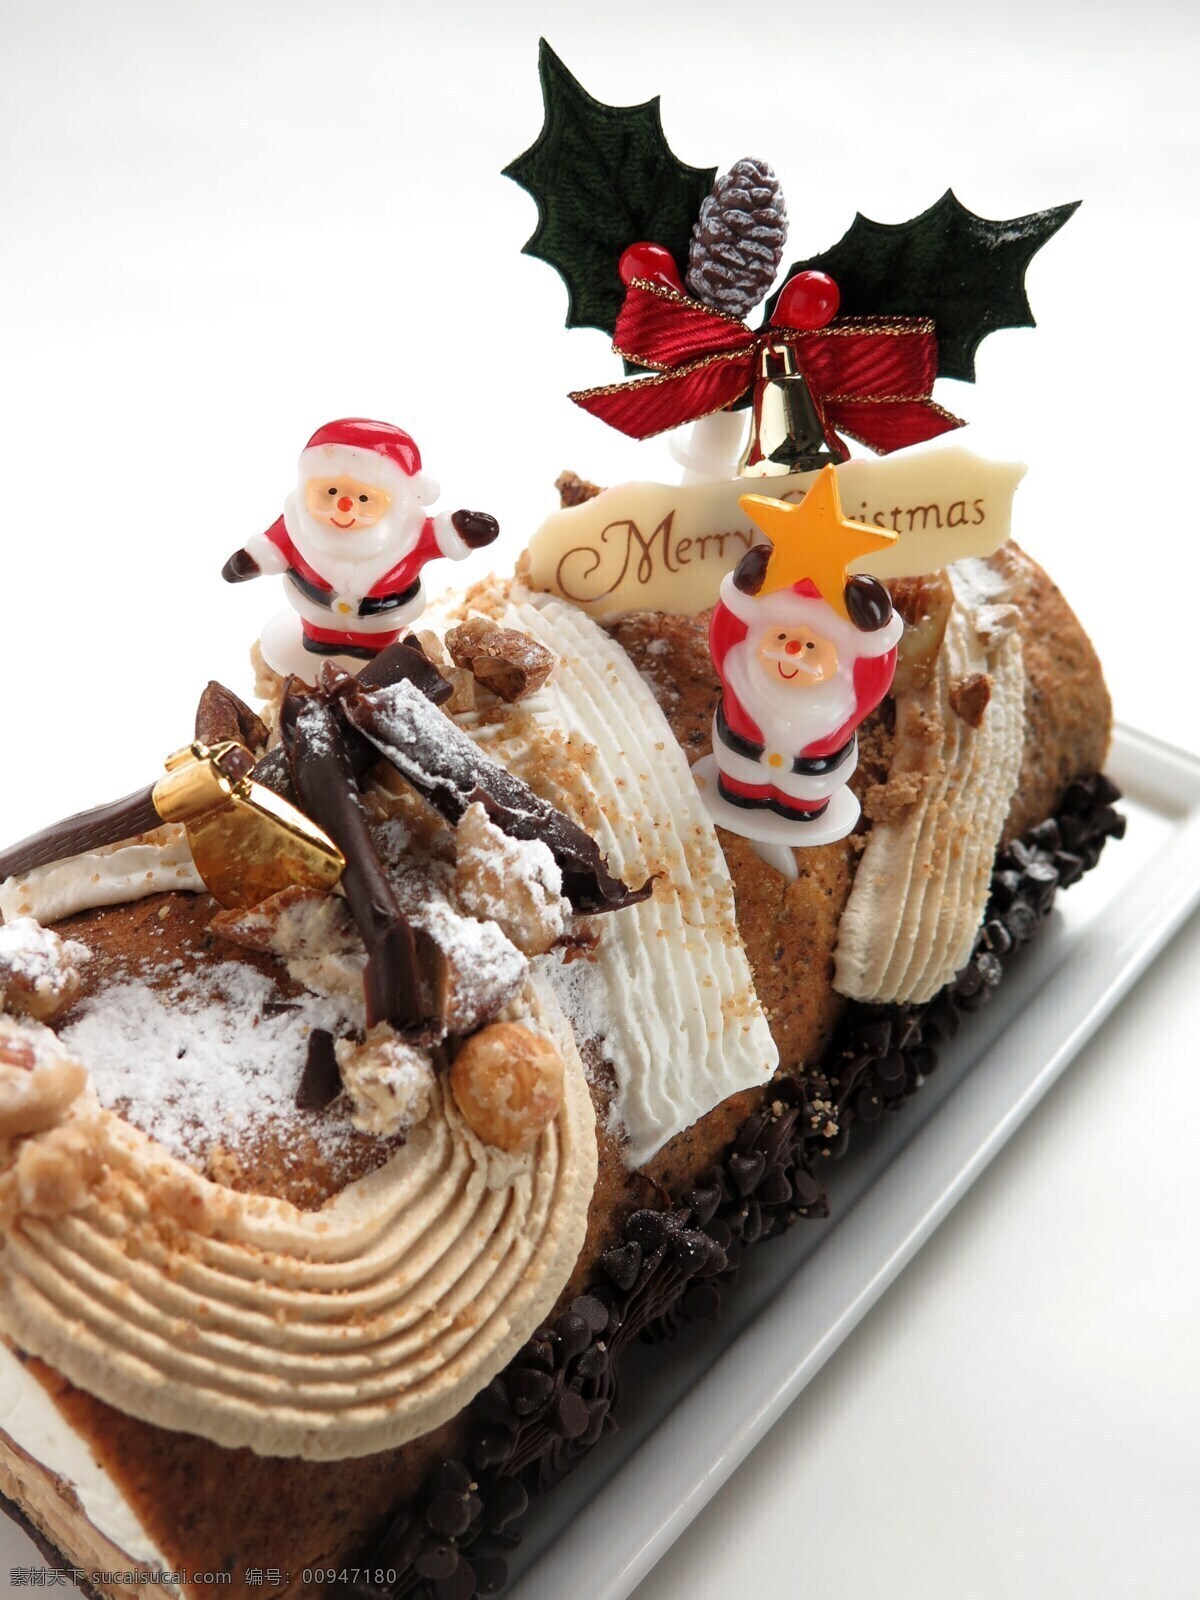 圣诞蛋糕 烘焙 下午茶 糖果 甜品 糕点 西餐 奶酪 水果糕点 小蛋糕 法式甜点 欧式甜点 甜点 奶酪蛋糕 巧克力糕点 巧克力蛋糕 餐饮美食